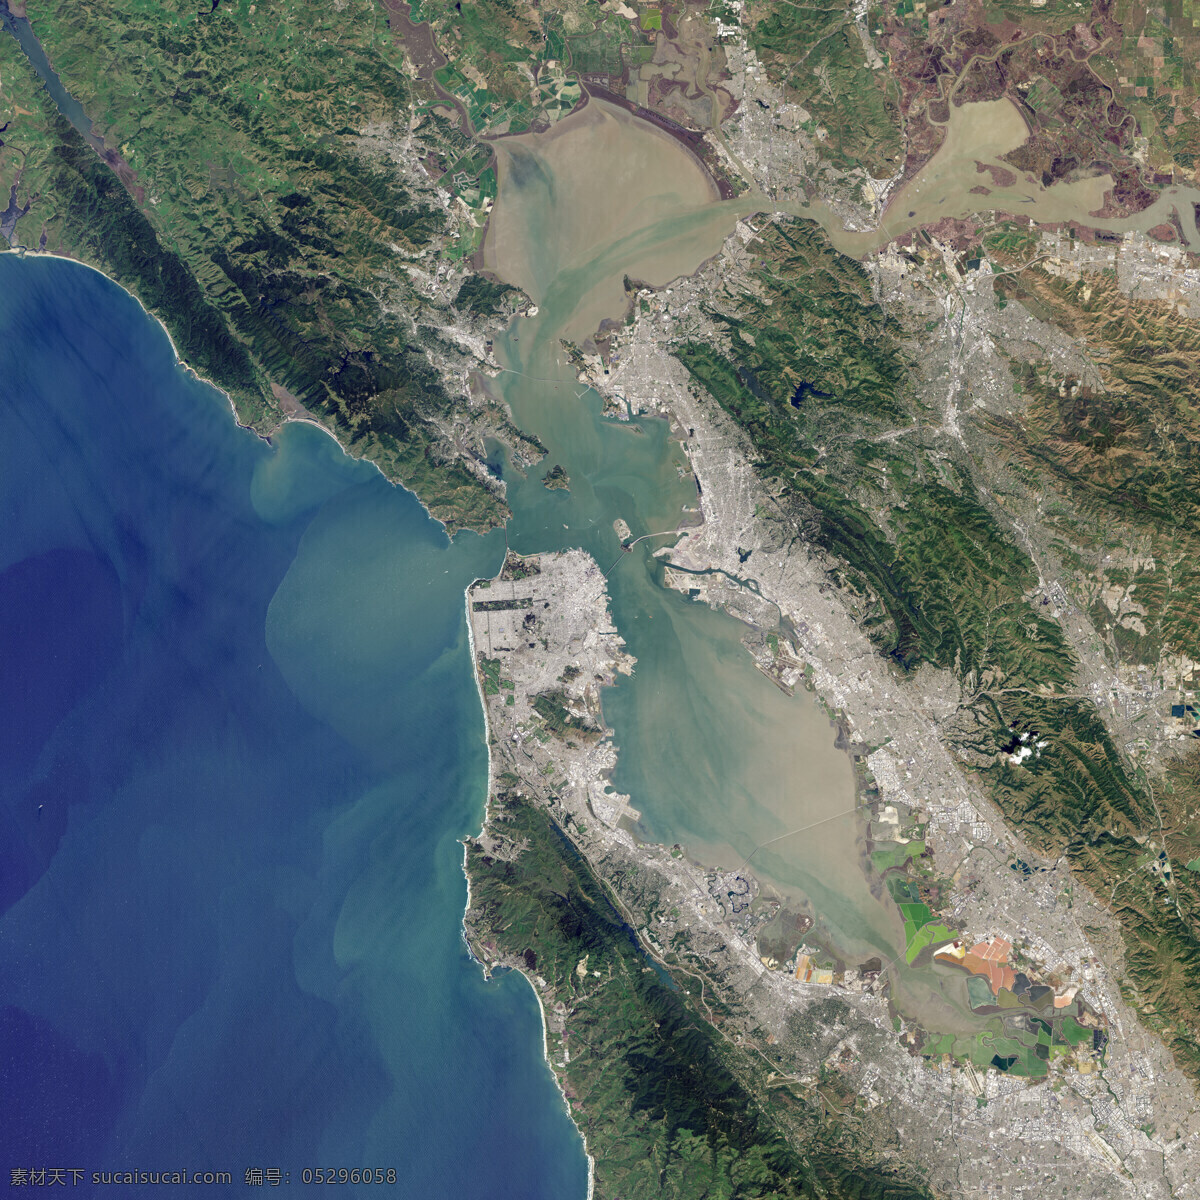 旧金山 卫星 遥感图 圣弗朗西斯科 金门大桥 nasa 卫星图 地图 上帝之眼 俯视图 长三角 沪宁杭 长江 自然景观 自然风景